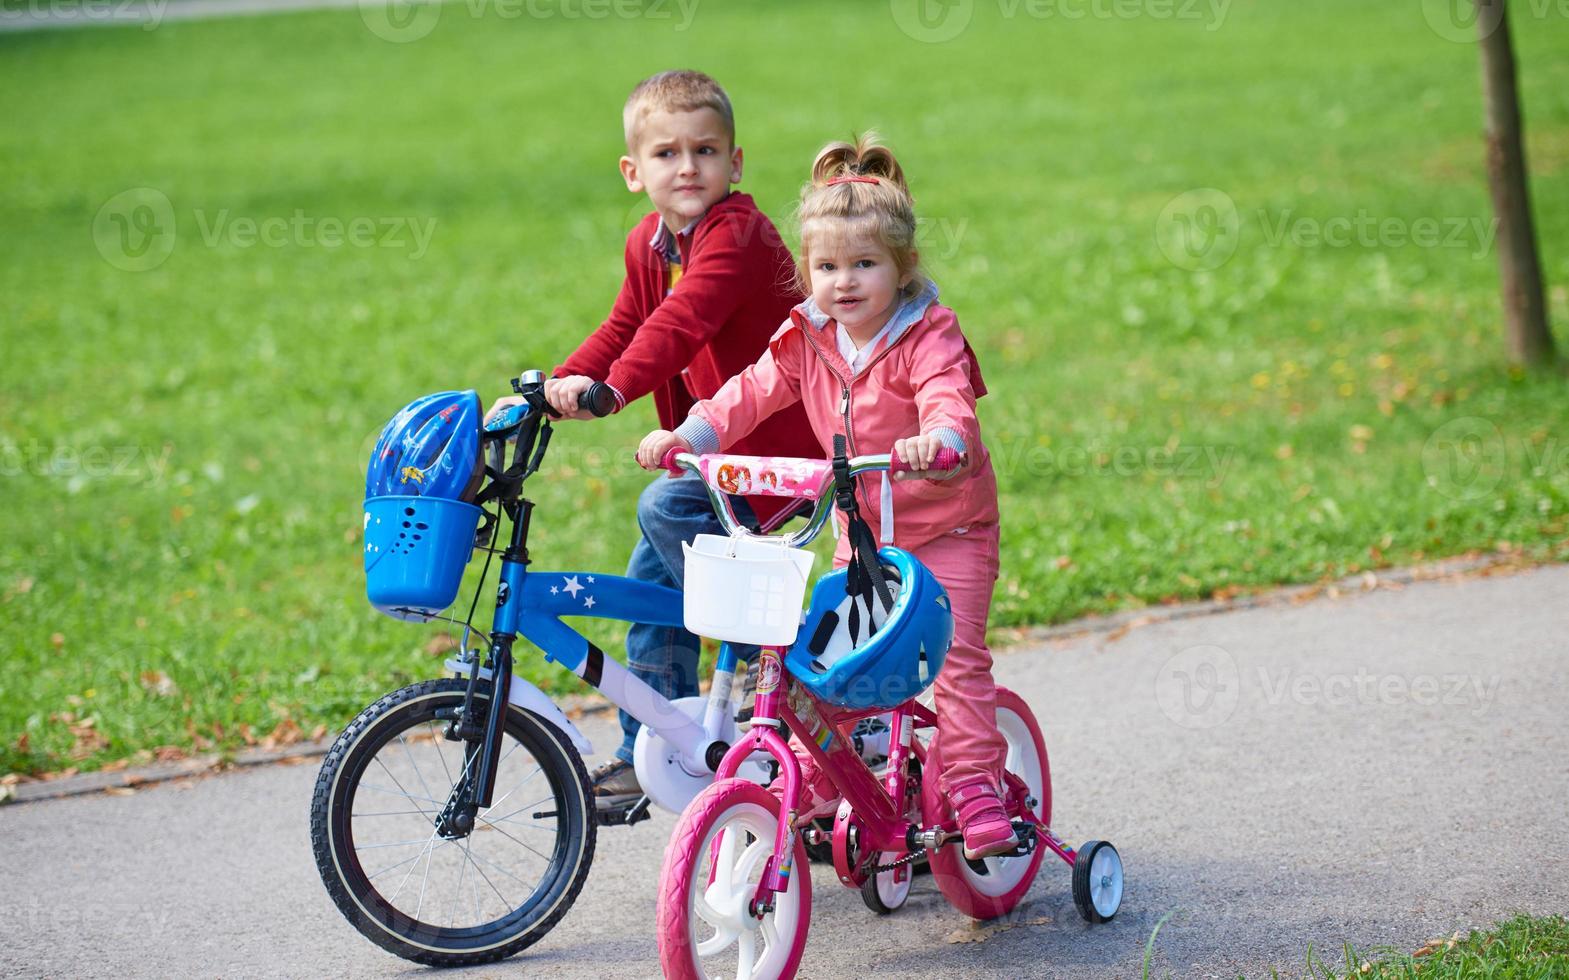 niño y niña con bicicleta foto